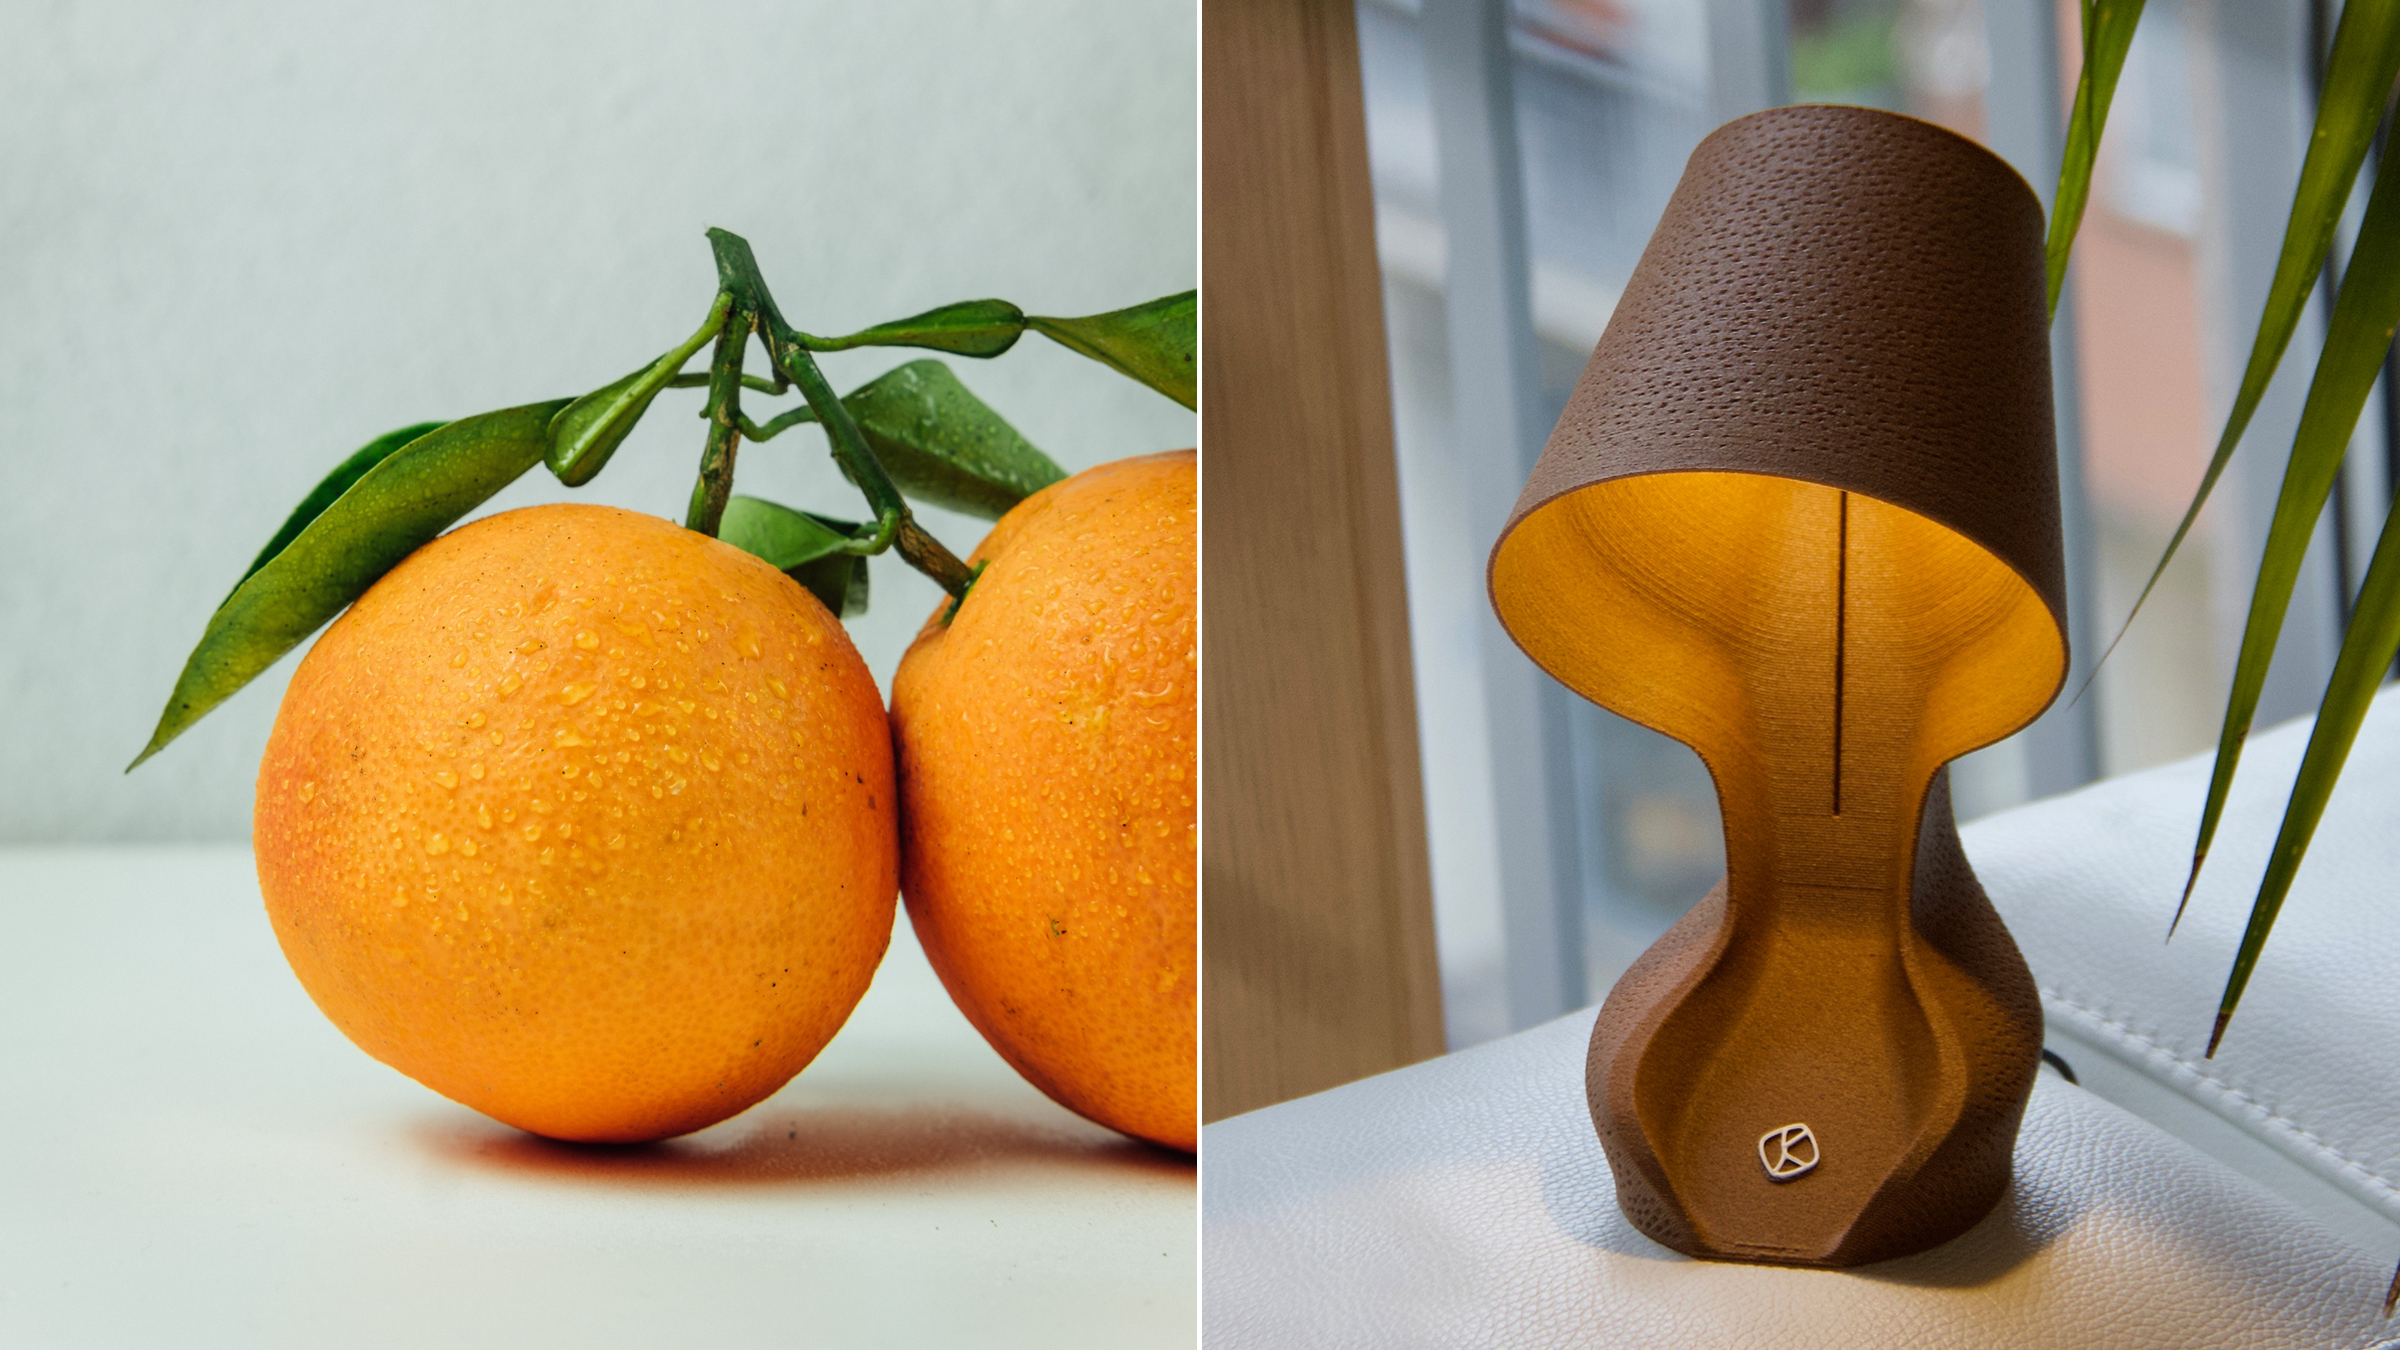 Cette lampe a été conçue avec des pelures d'oranges grâce à l